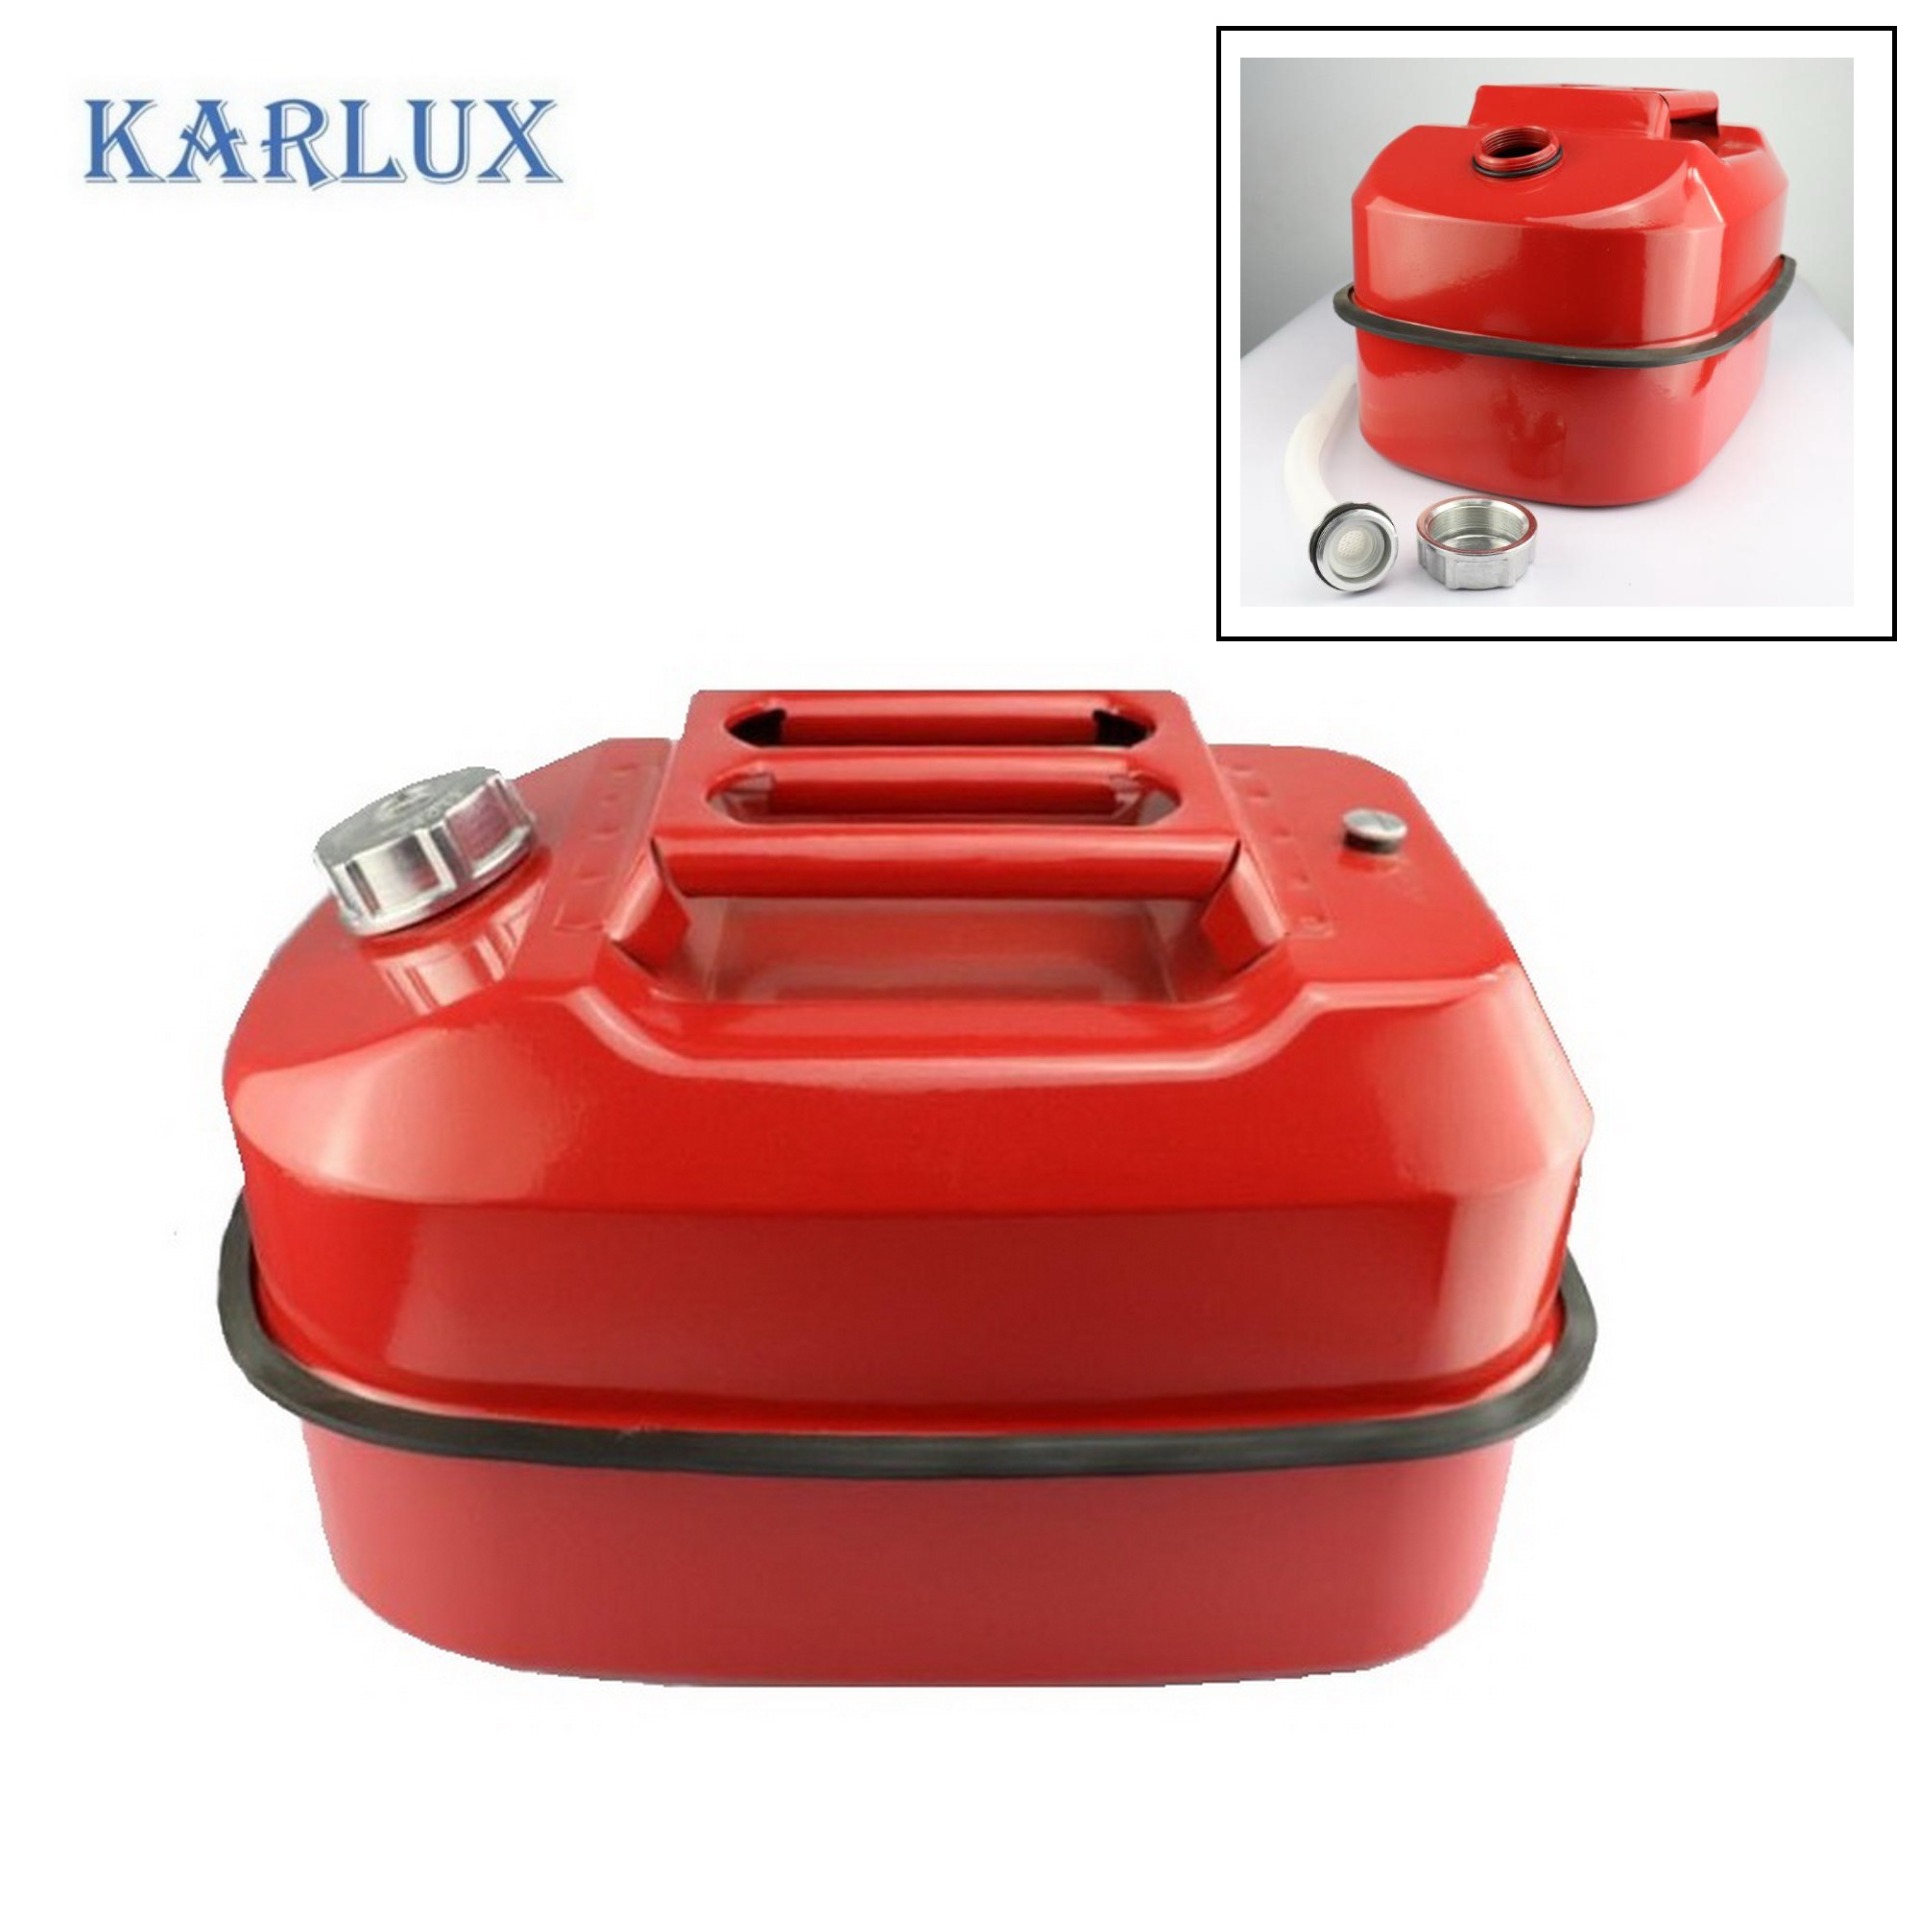 Karlux 20ลิตร ถังแกลลอนเหล็กเก็บน้ำมันสำรอง Fuel Tank ถังน้ำมันสีแดง พร้อมท่อเติมน้ำมัน